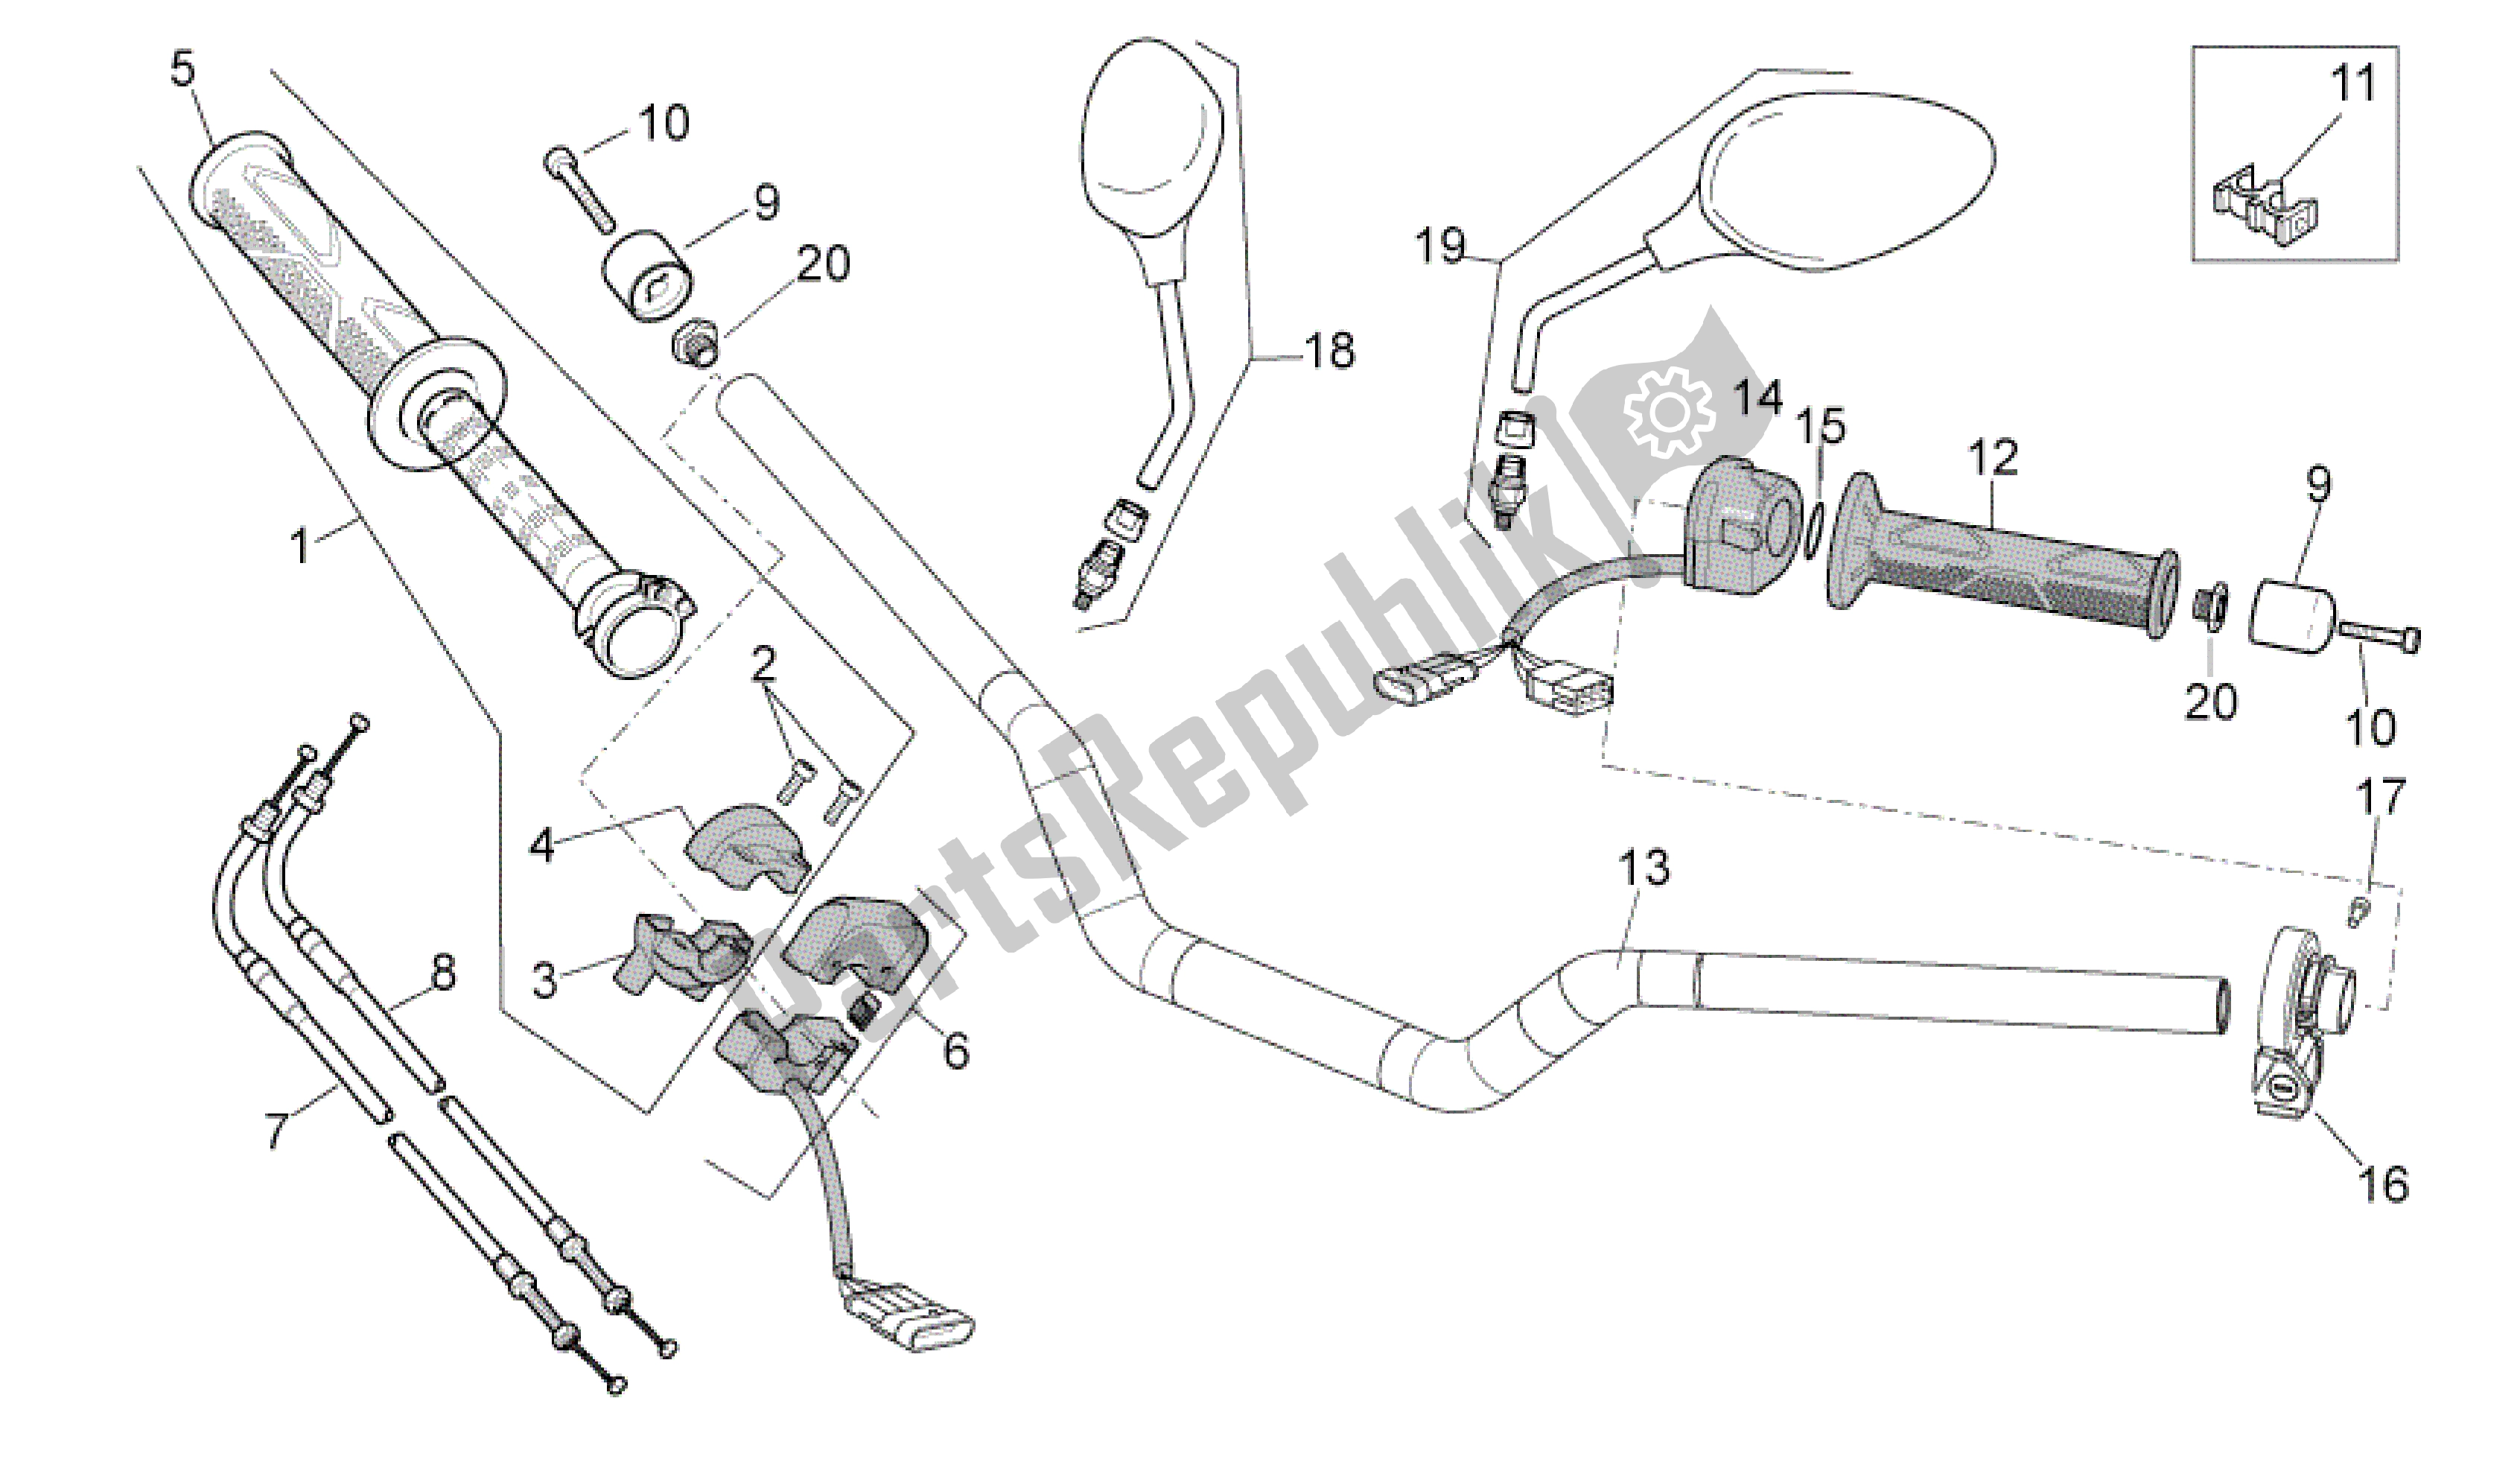 Todas las partes para Manillar - Controles de Aprilia RSV4 Tuono V4 R Aprc ABS 1000 2014